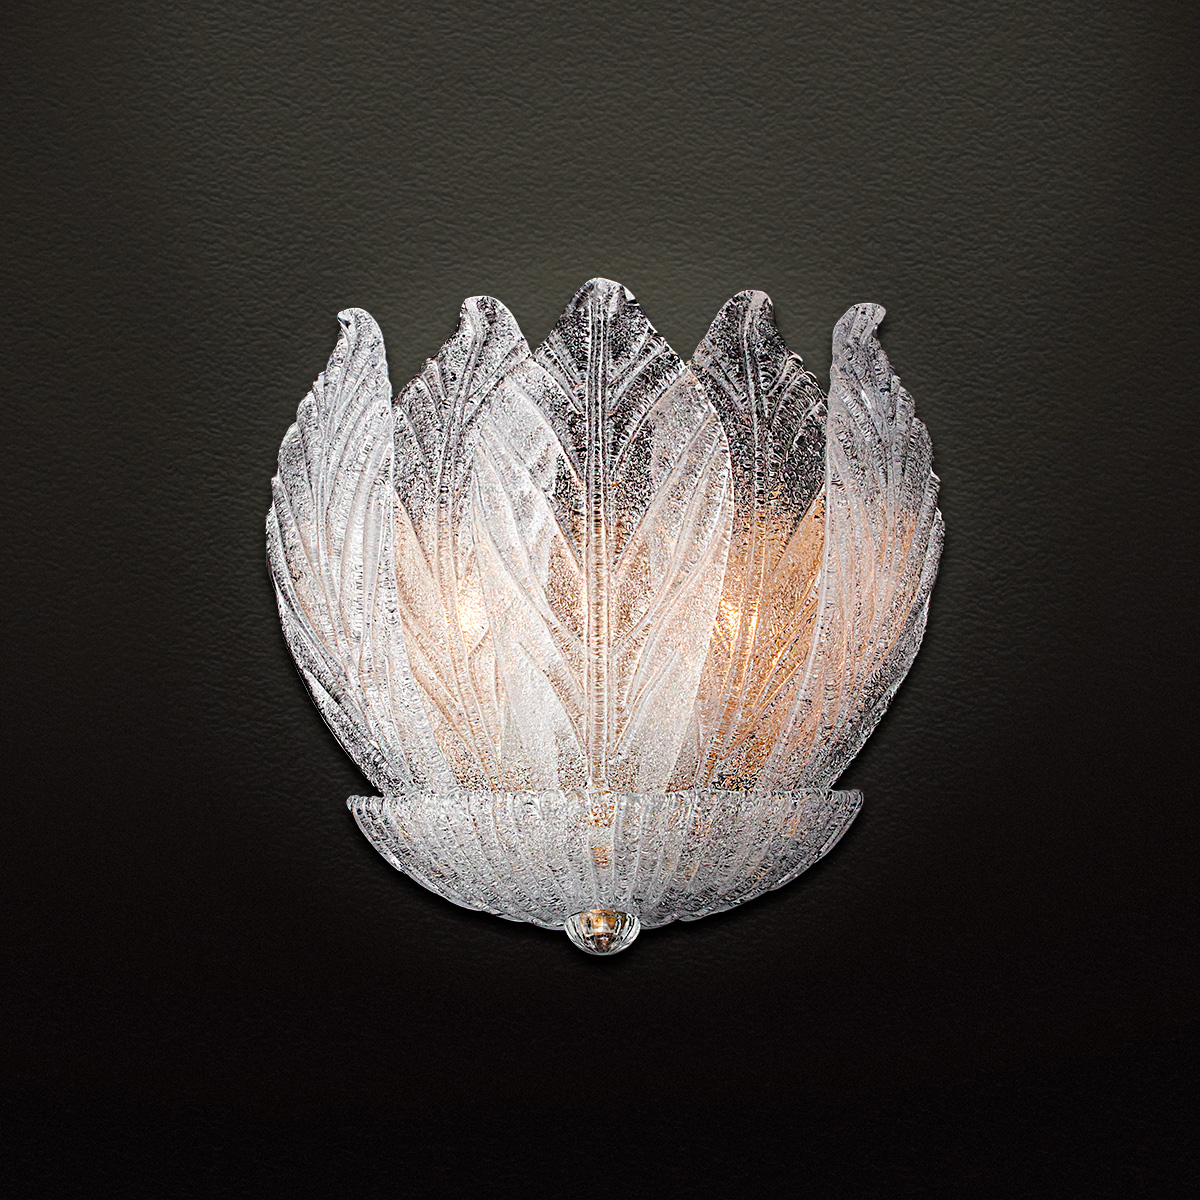 Κλασική απλίκα με κρυστάλλινα φύλλα Μουράνο ΗΛΙΟΣ classic wall lamp with Murano crystal leaves